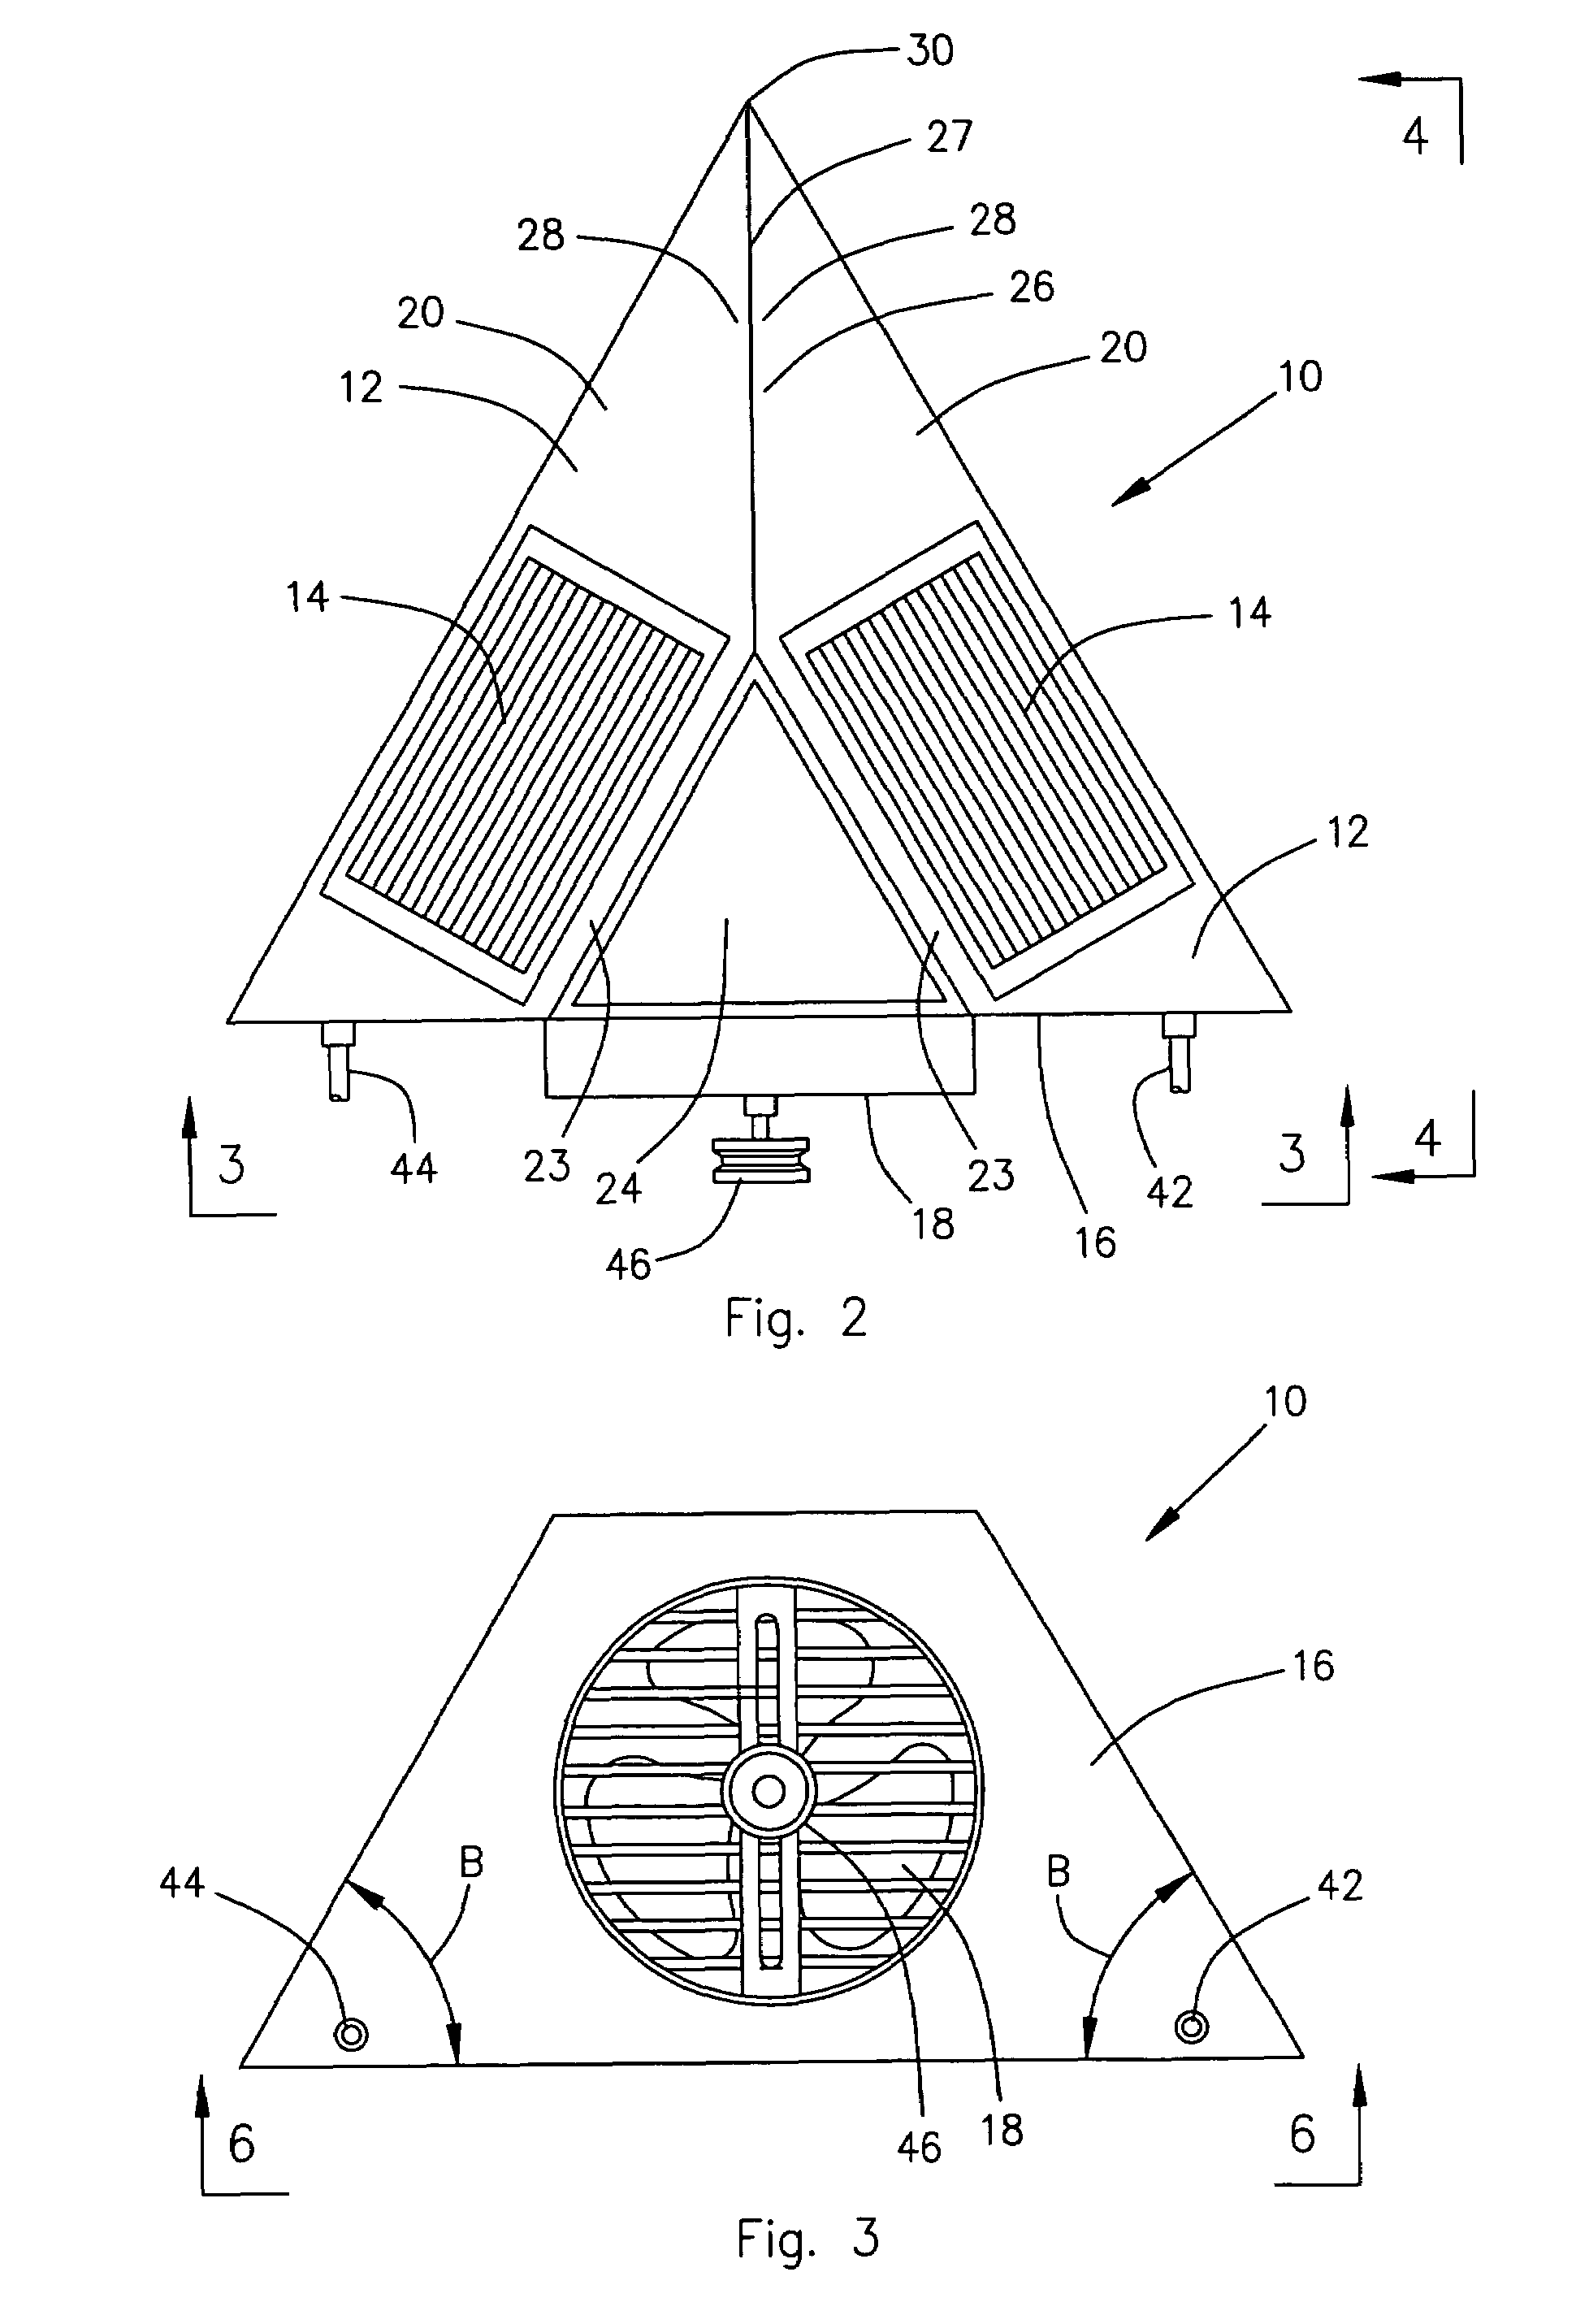 Triangular shaped heat exchanger